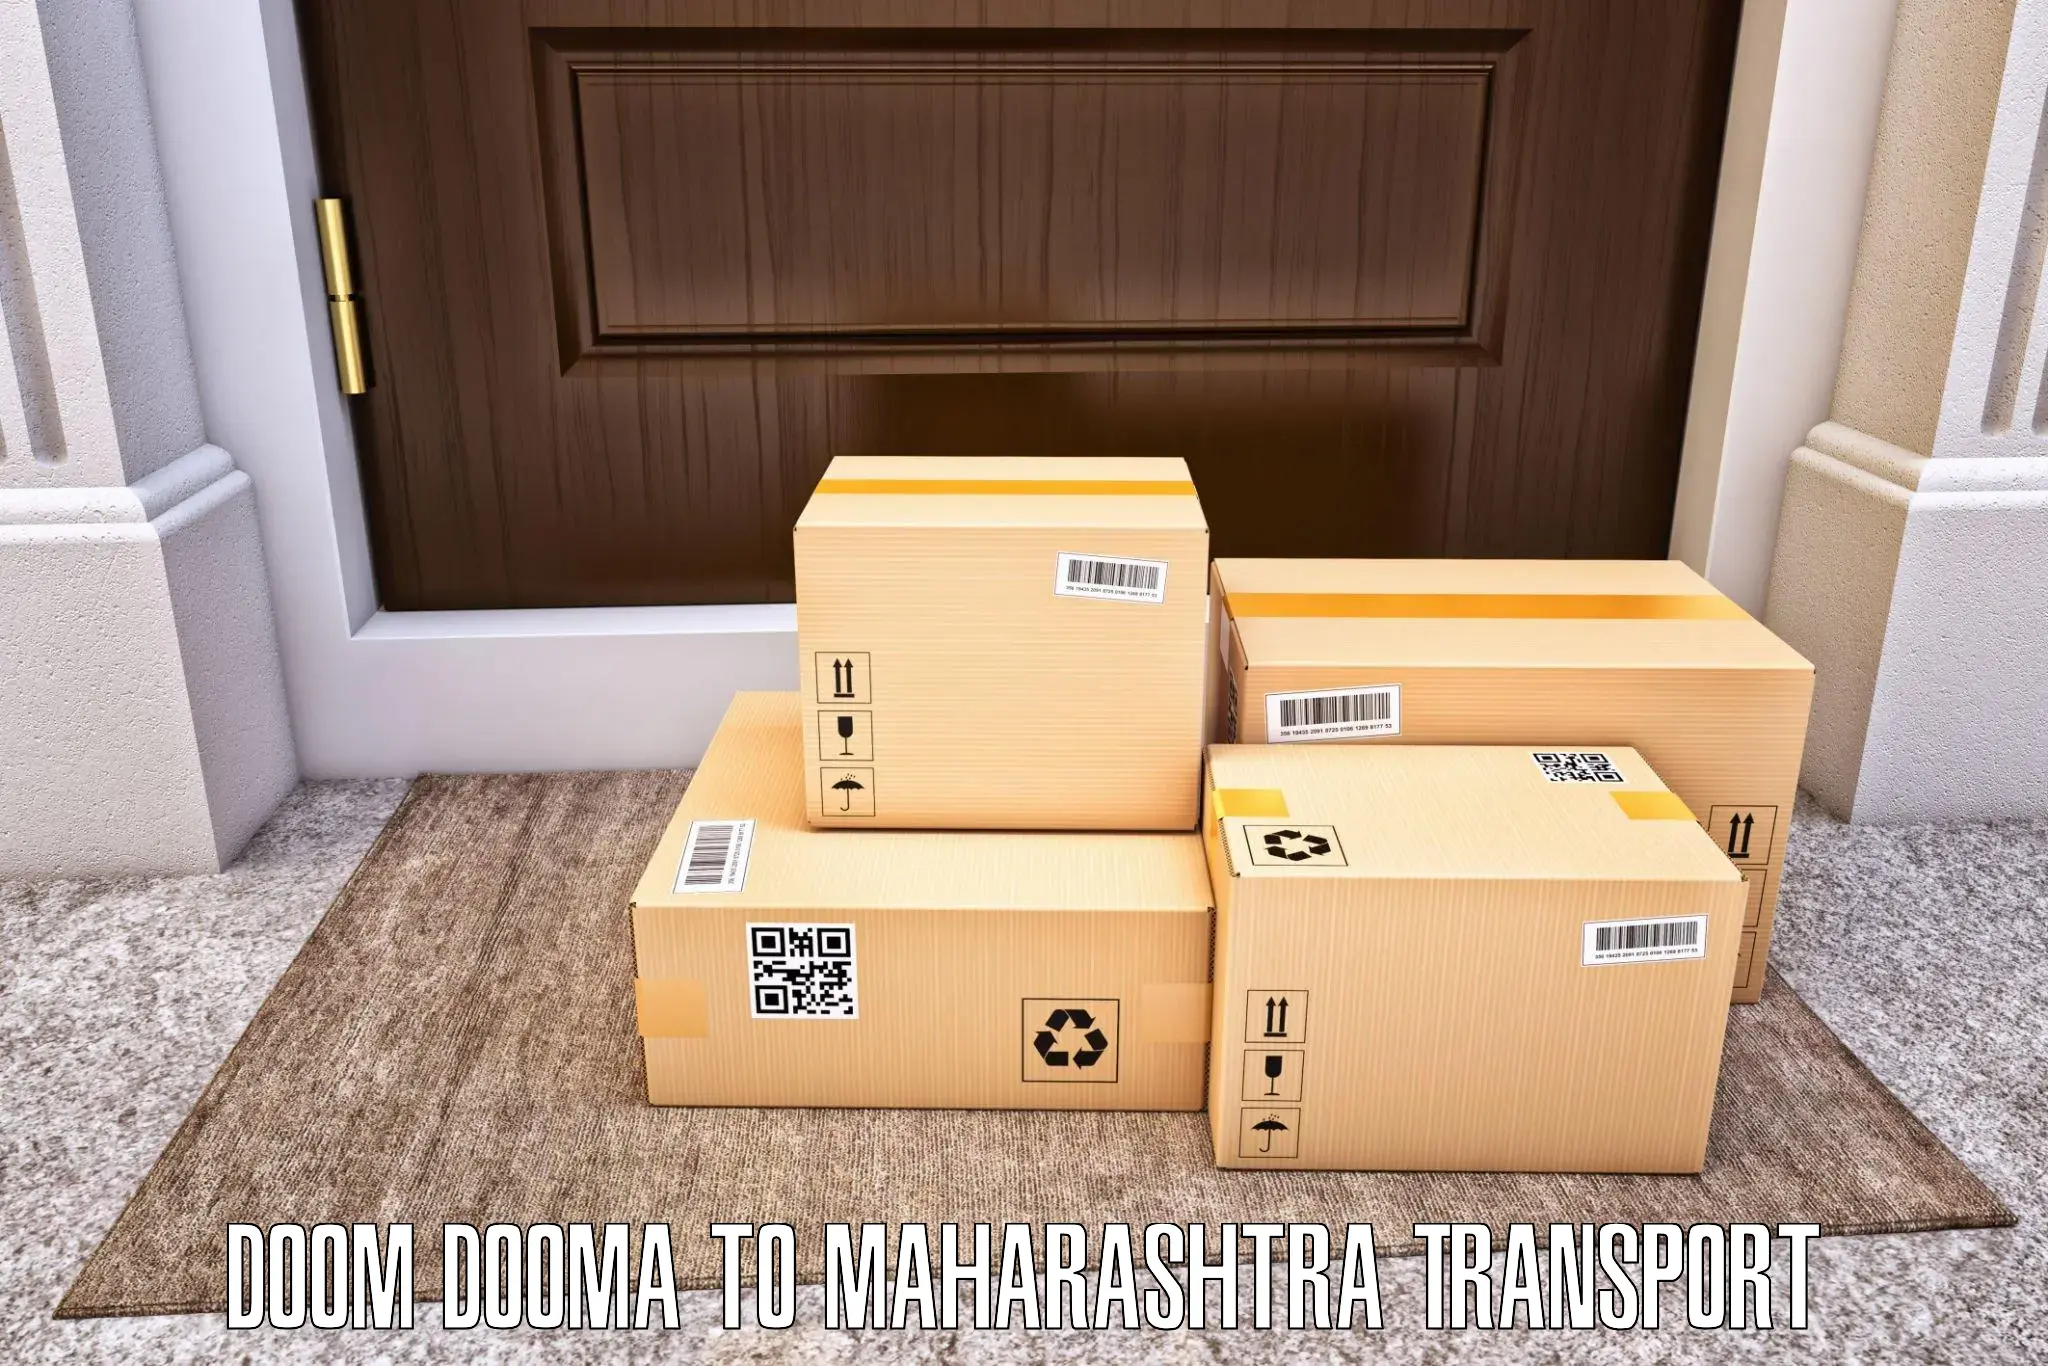 Cargo transportation services Doom Dooma to Yeola